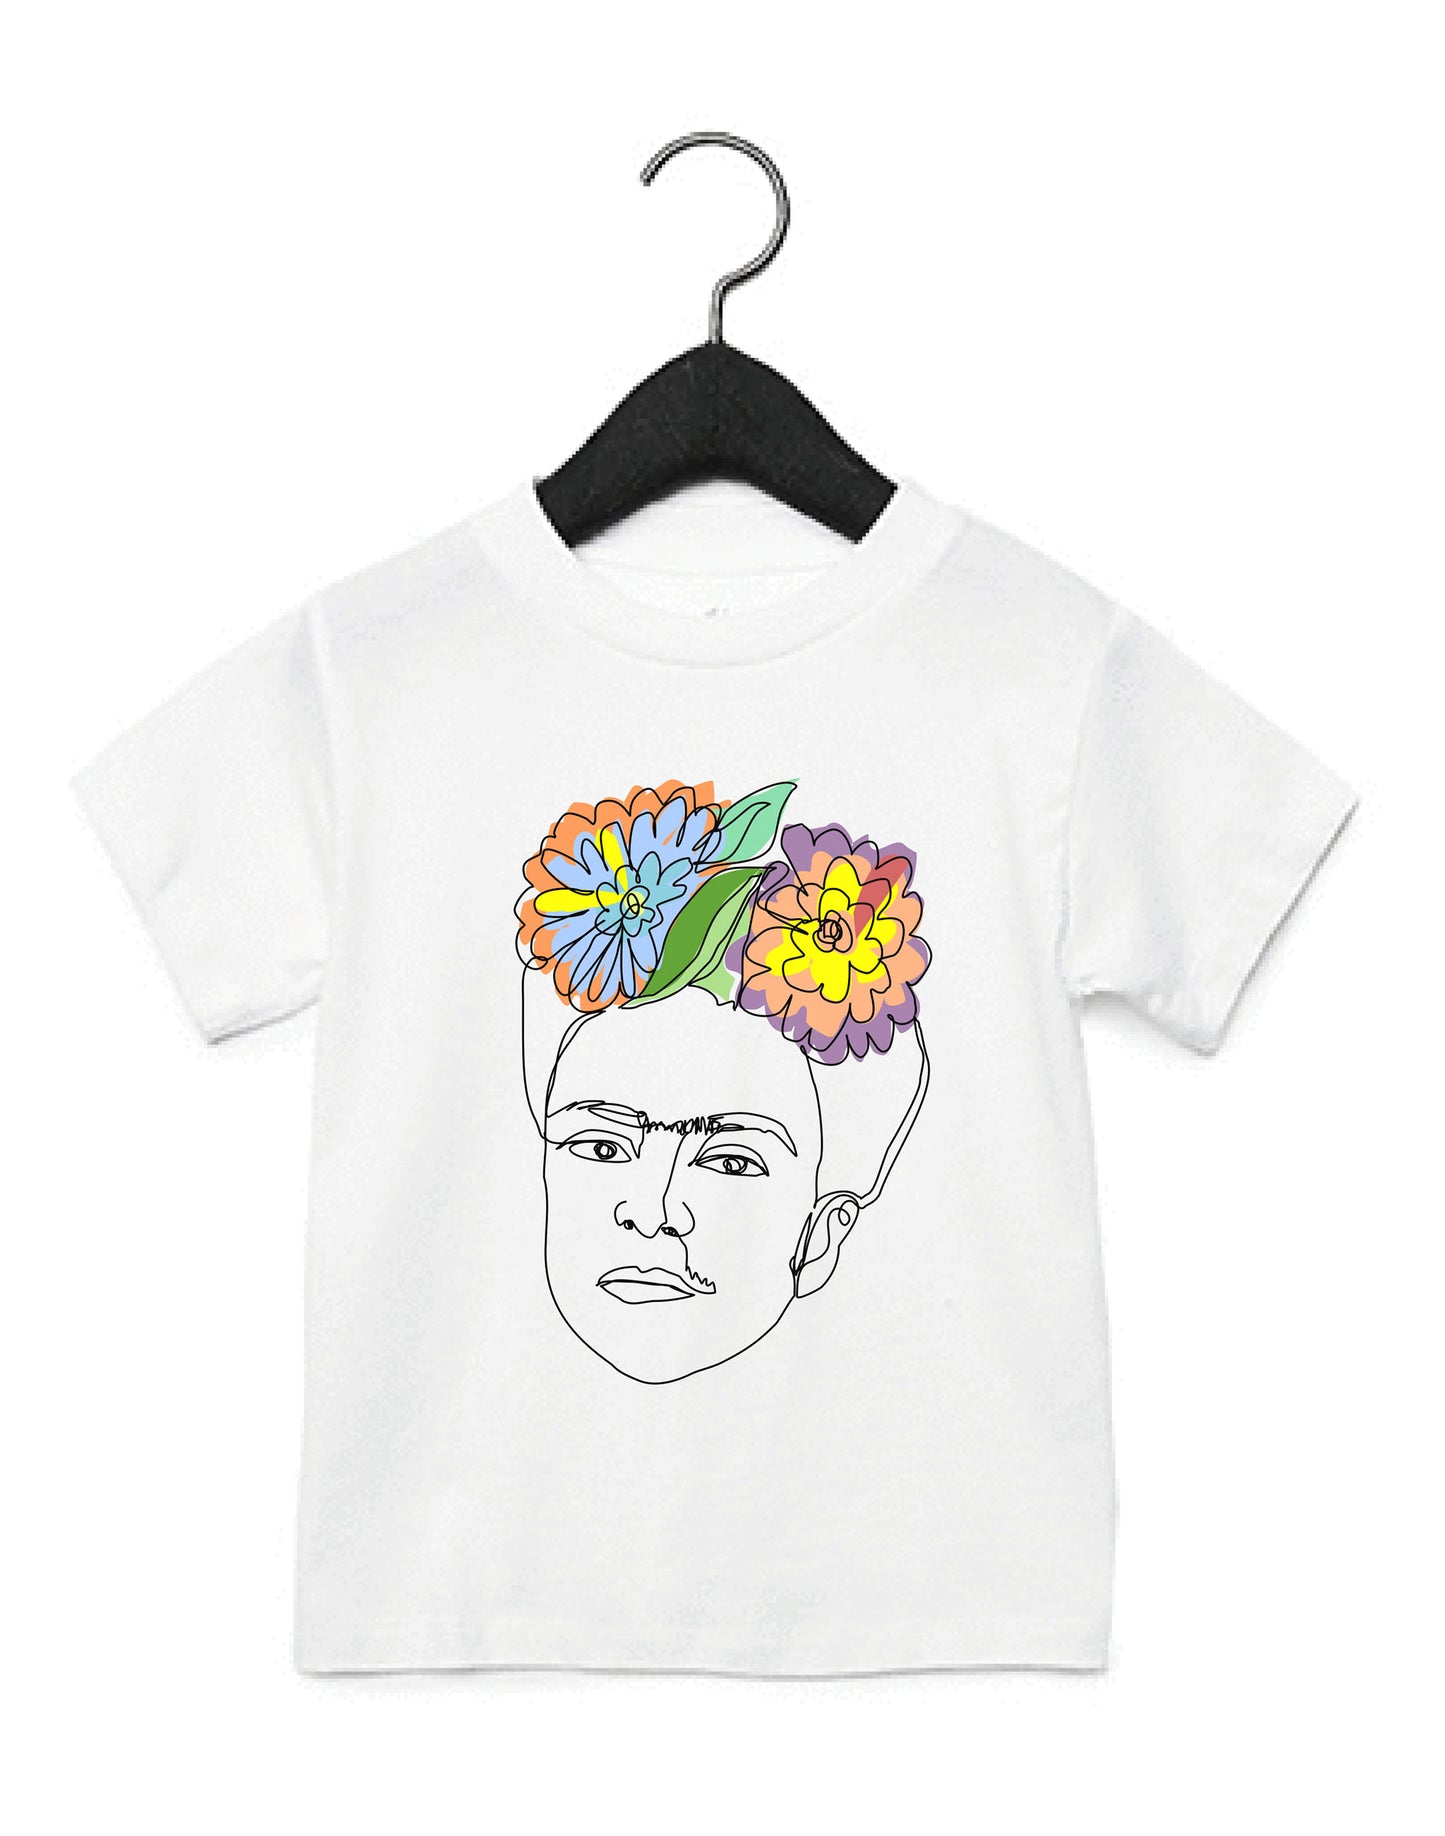 Ode to Frida Kahlo Kids T-Shirt